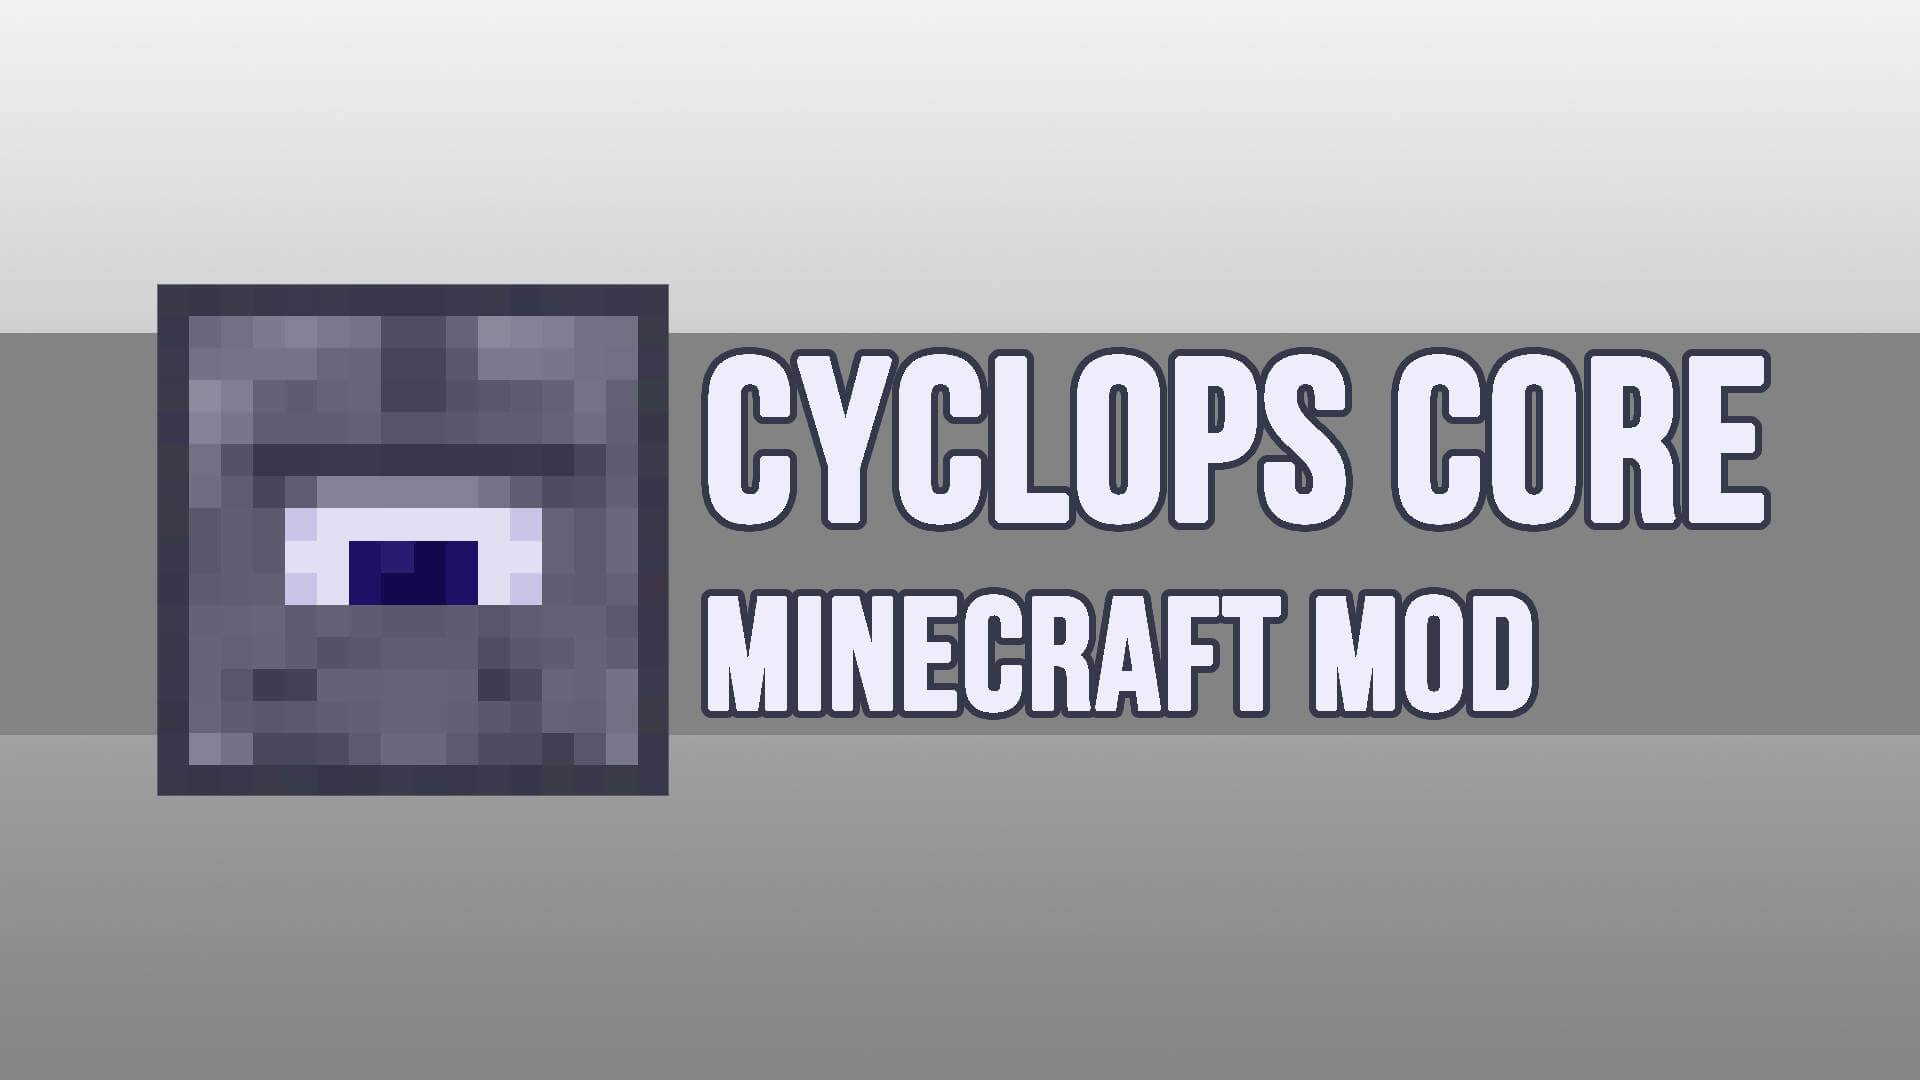 Cyclops Core скриншот 1